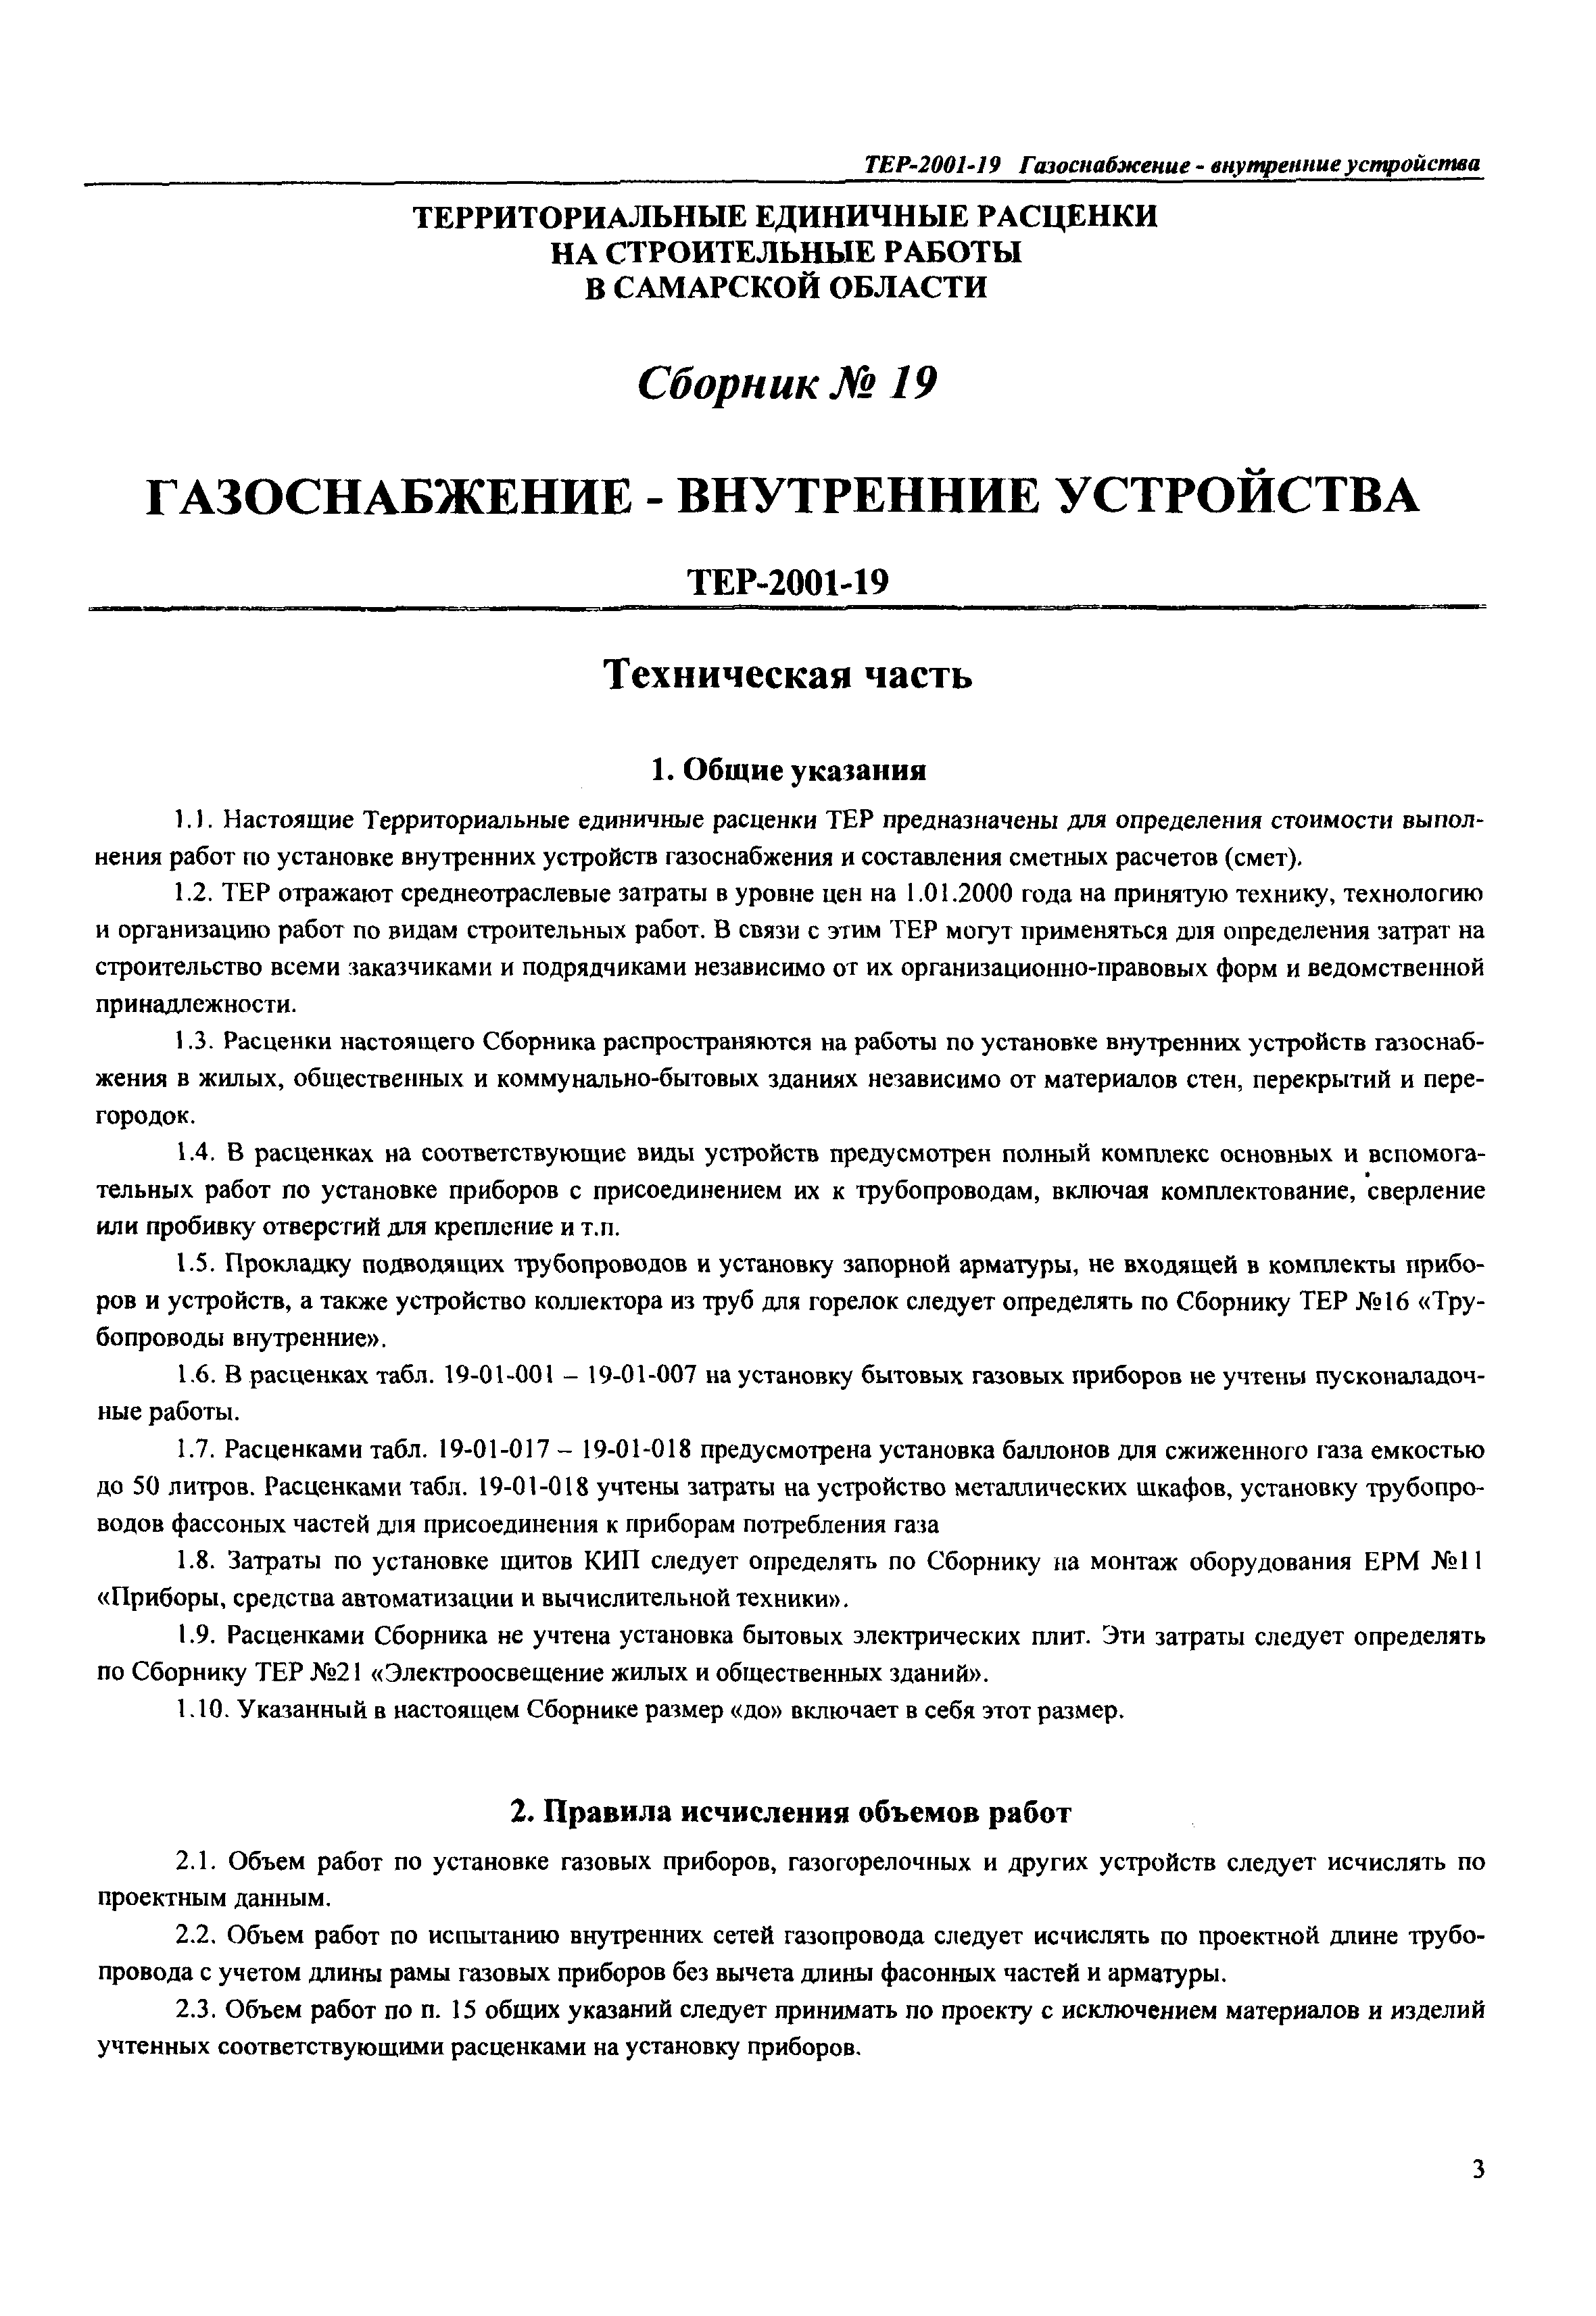 ТЕР Самарской области 2001-19